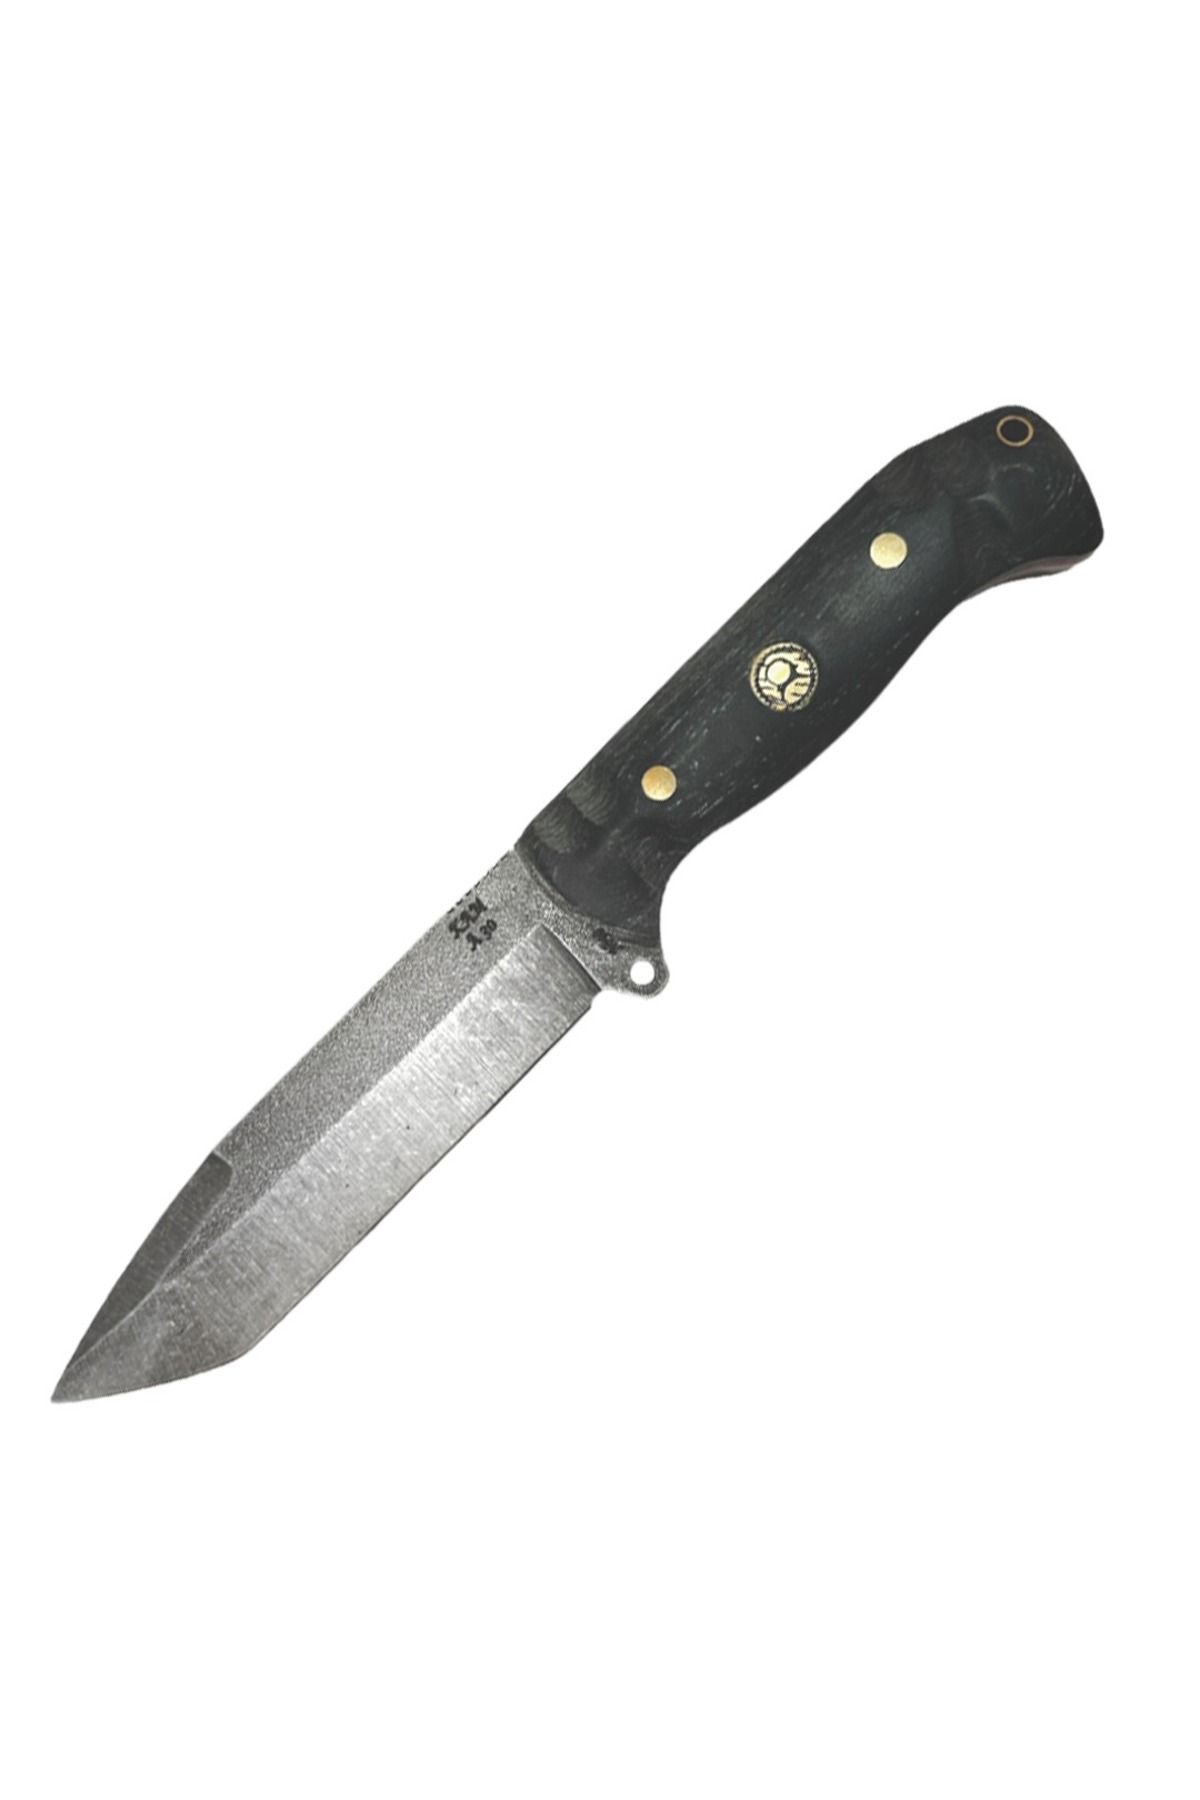 KAM KNIFE El Yapımı Kılıflı Tactical Bıçak-böhler N690 Çelik - A30 N690 Siyah